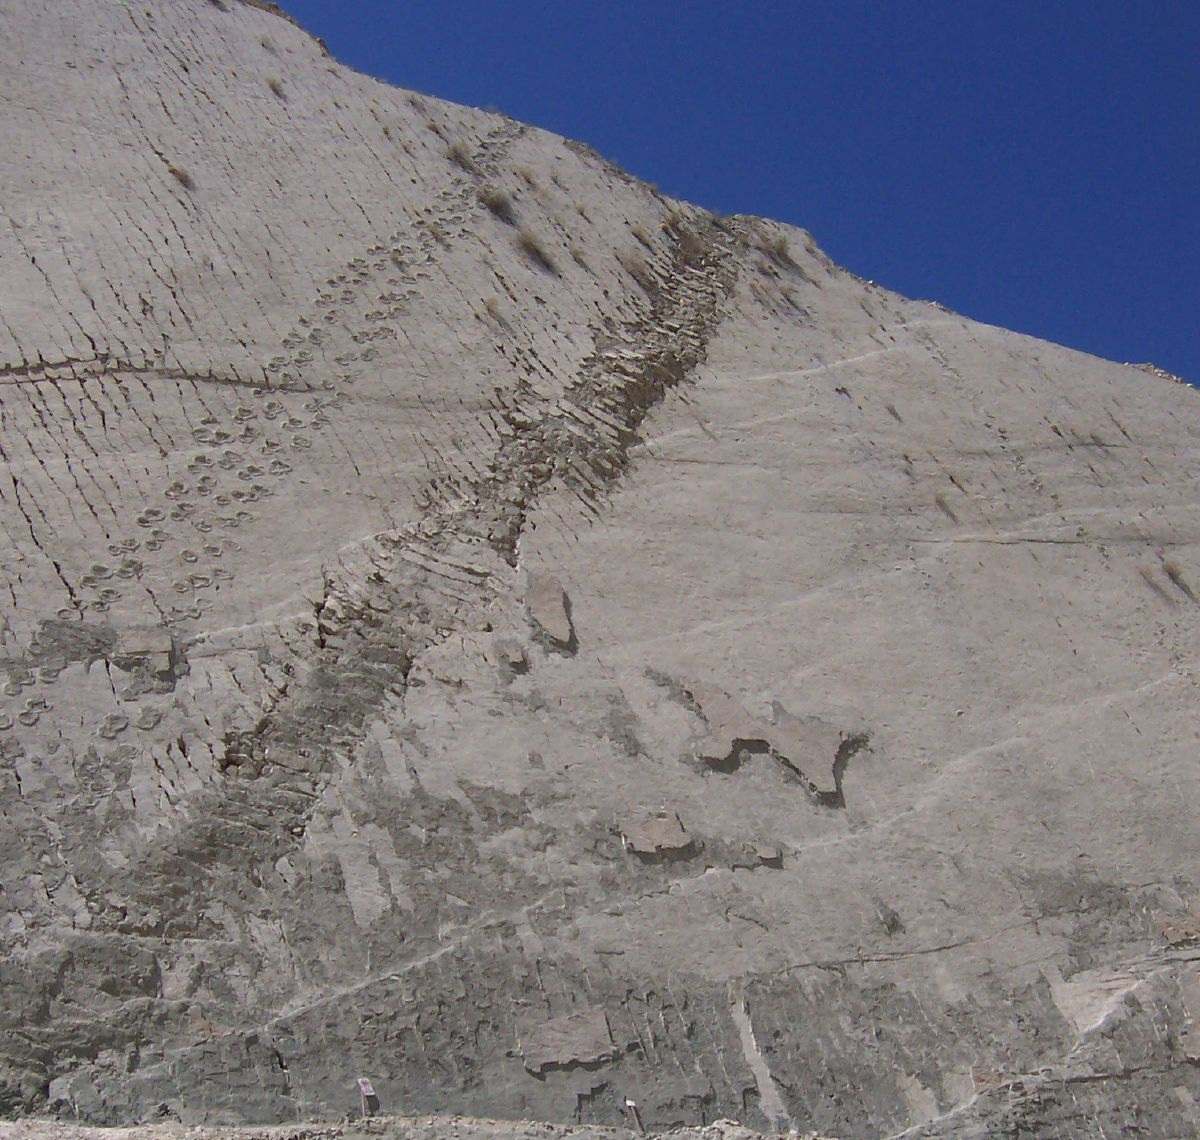 รอยเท้าบนผนัง: ไดโนเสาร์ปีนหน้าผาในโบลิเวียจริงหรือ? 7